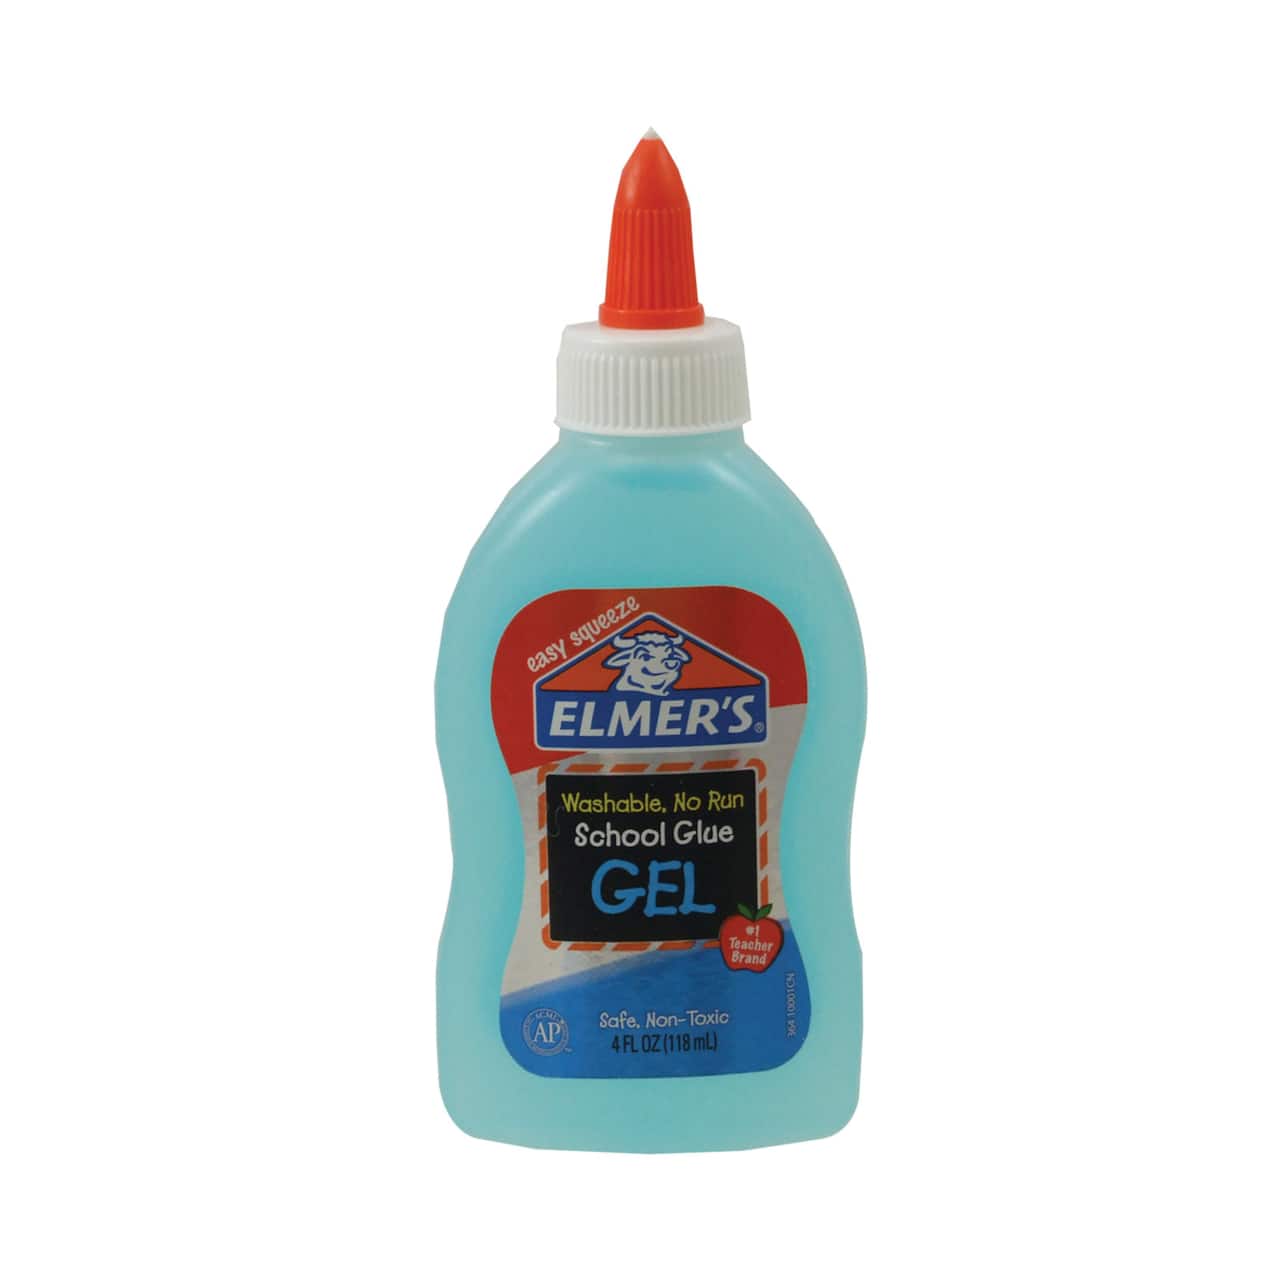 Elmer's® Washable School Glue Gel, 4oz.